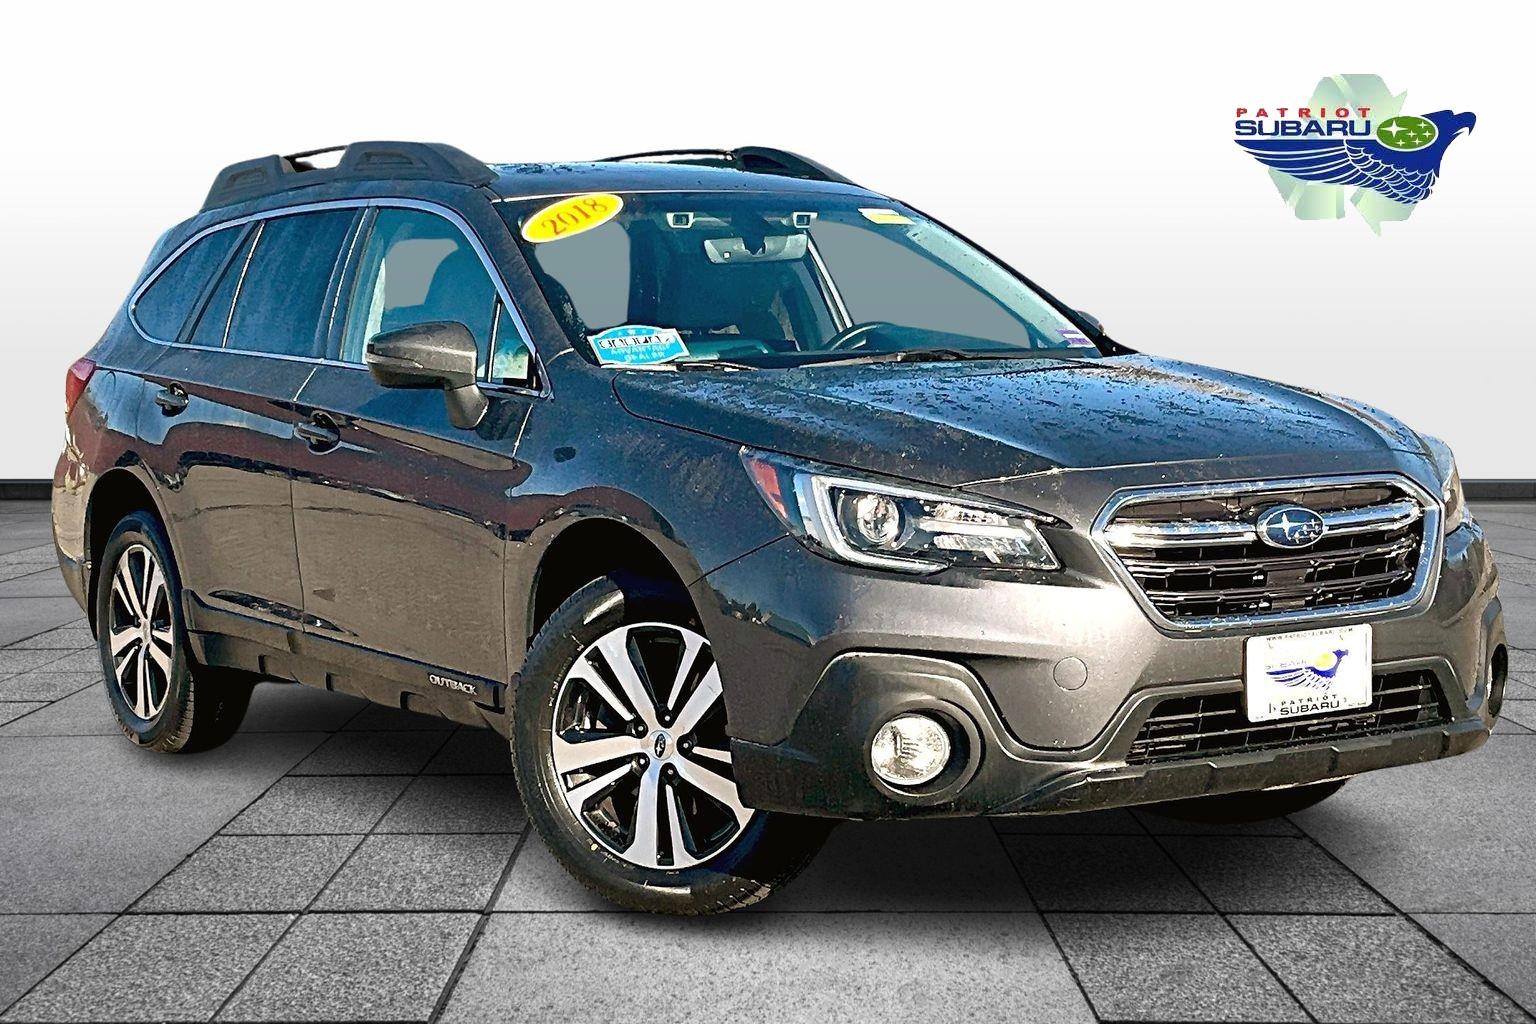 Used 2018 Subaru Outback For Sale Near Portland Maine in Saco 